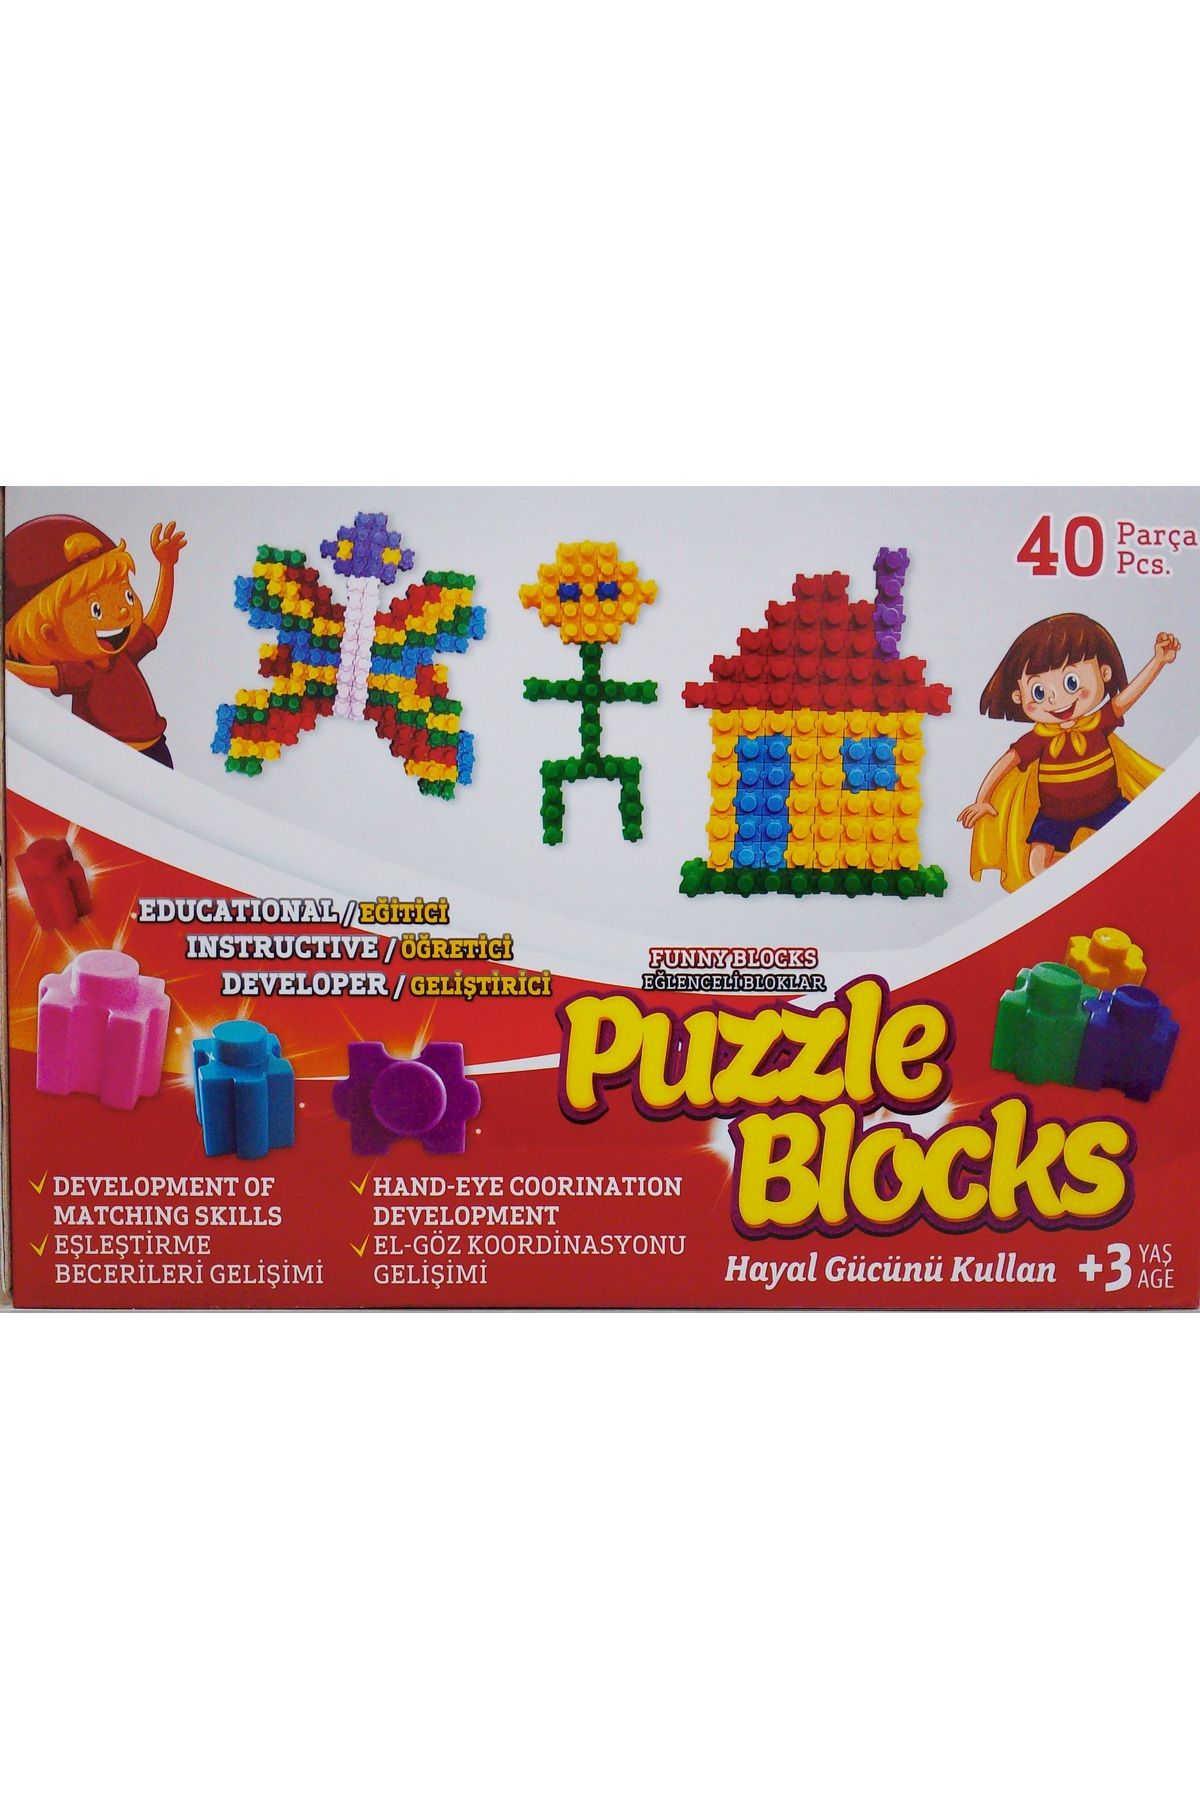 Buhara Yayınları Puzzle Blocks - Funny Blocks (Eğlenceli Bloklar) (40 Parça)